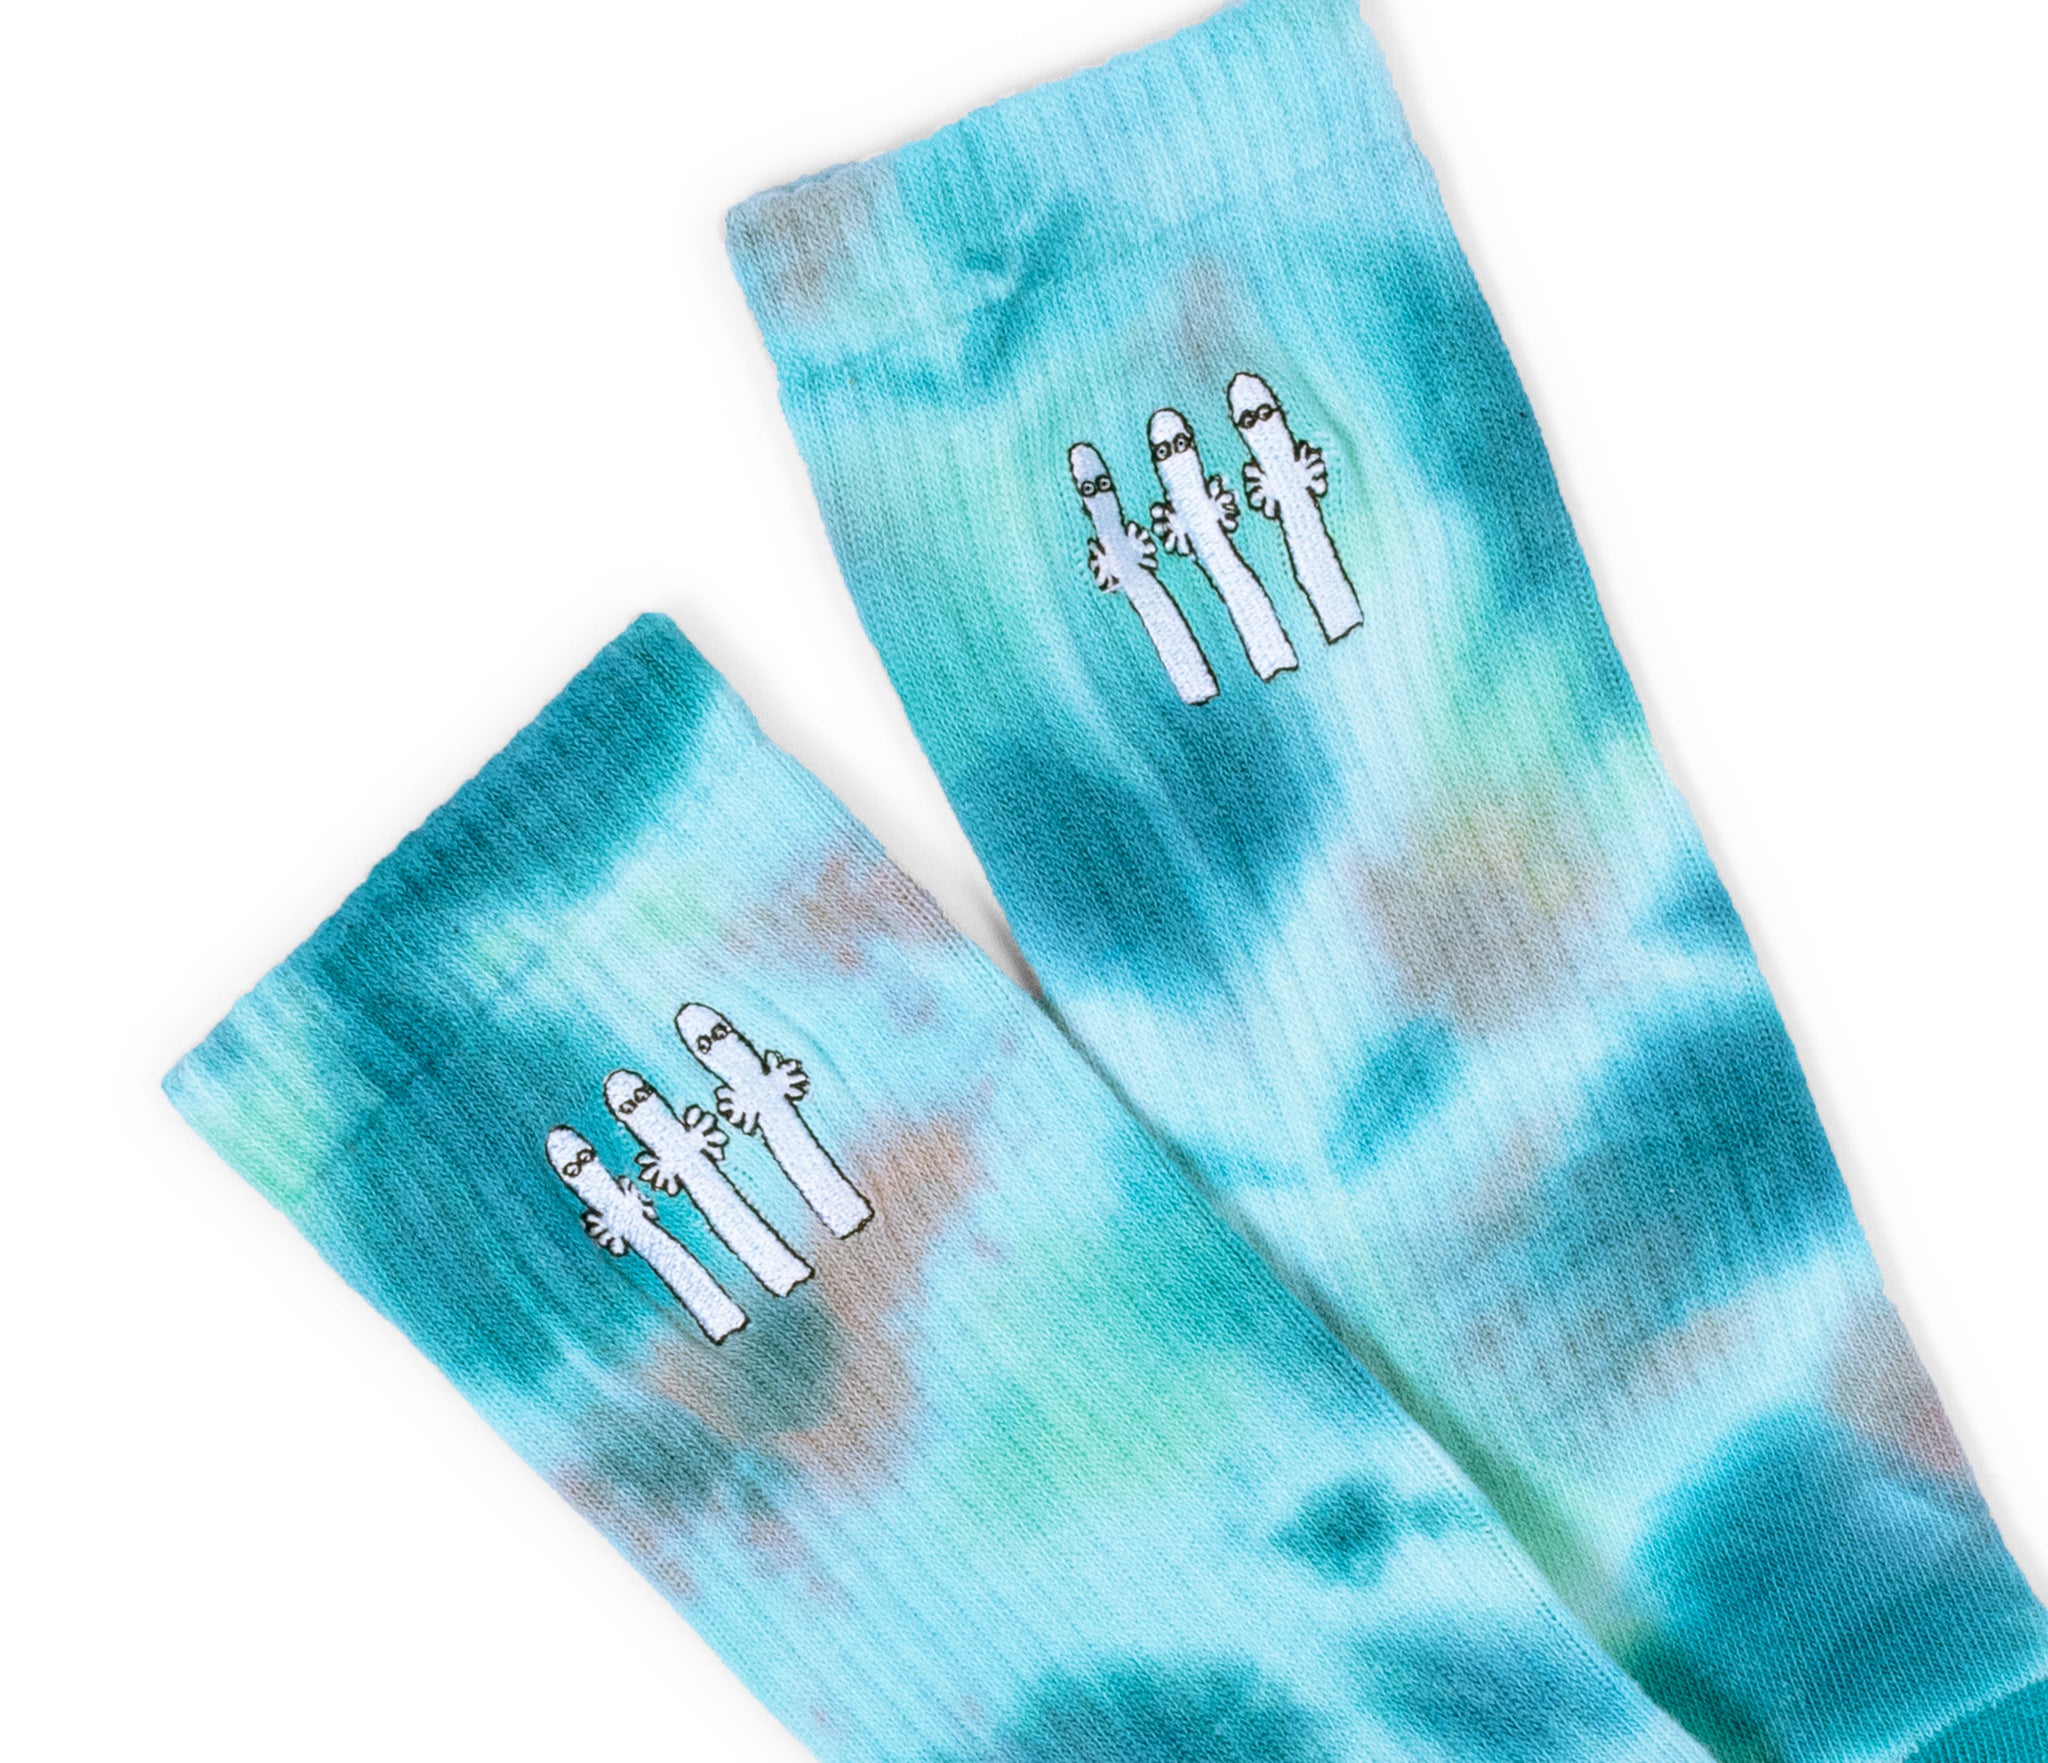 Moomin Men’s Retro Tie Dye Socks Turquoise Hattifatteners | Muumi Miesten Retro Tie Dye Sukat Turkoosi Hattivatit